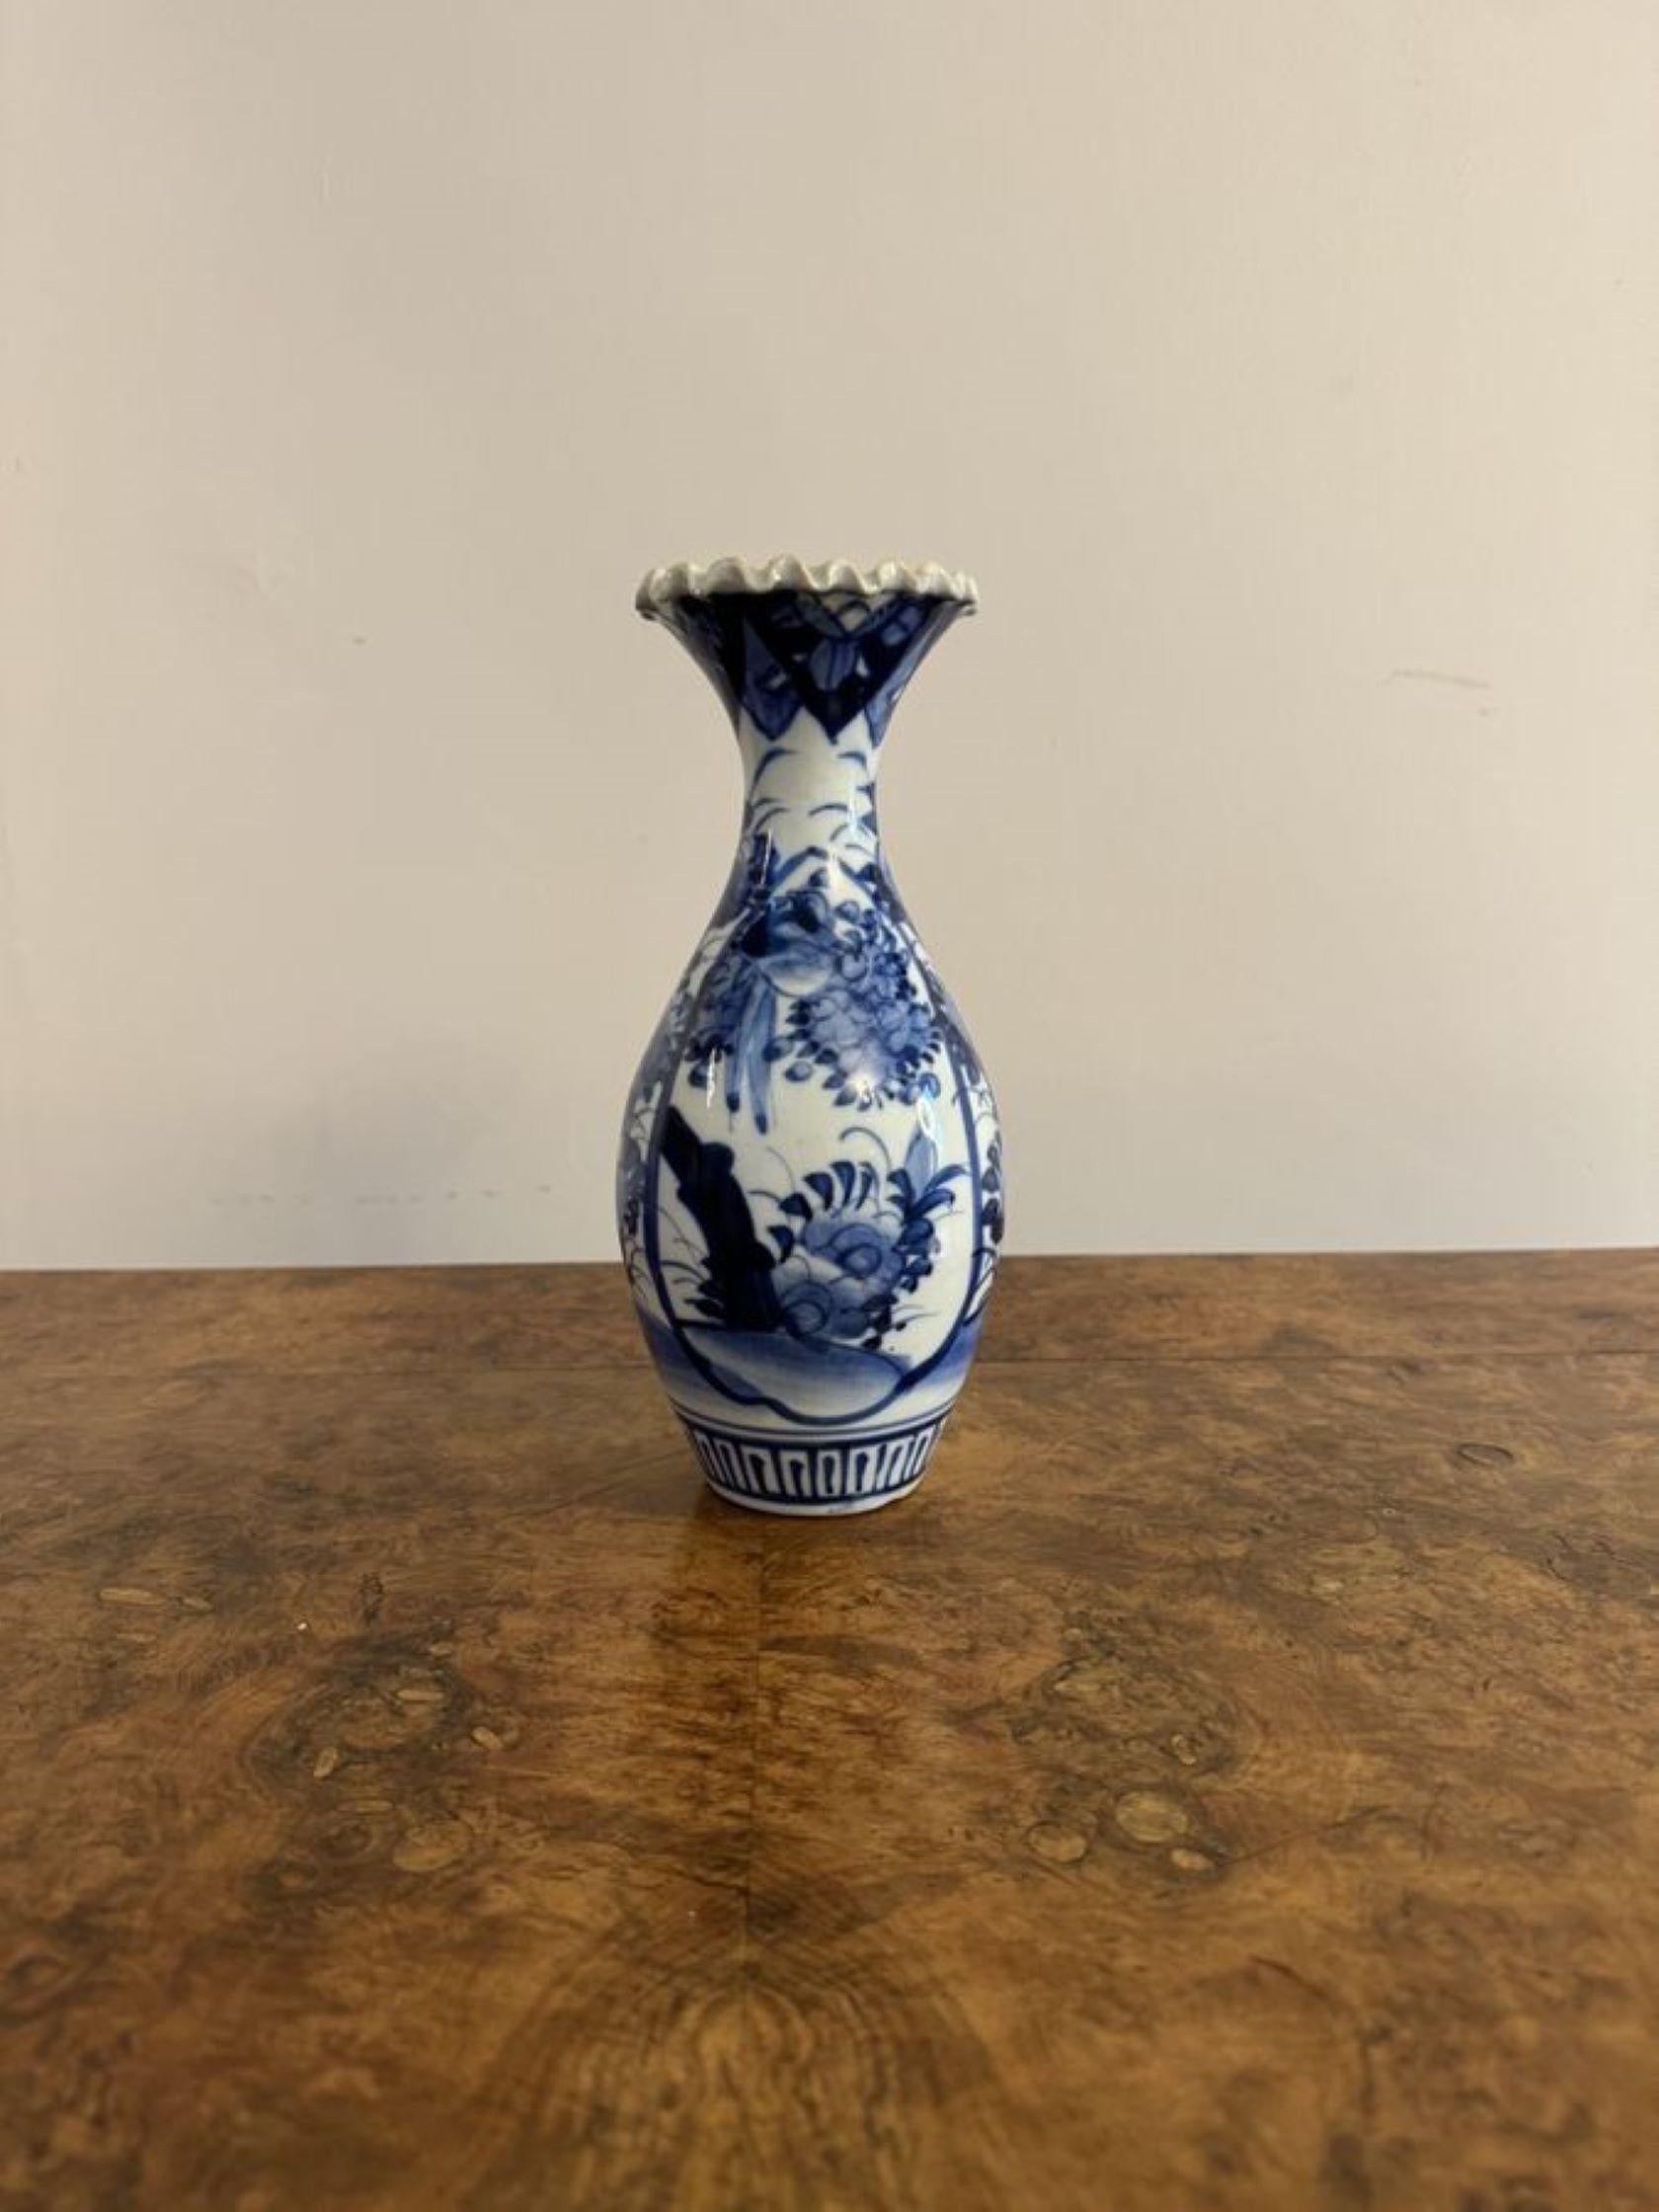 Charmant vase balustre japonais imari bleu et blanc de qualité ancienne Ce charmant vase balustre japonais imari bleu et blanc de qualité ancienne a été peint à la main dans de superbes couleurs bleues et blanches, avec des fleurs bleues sur un fond